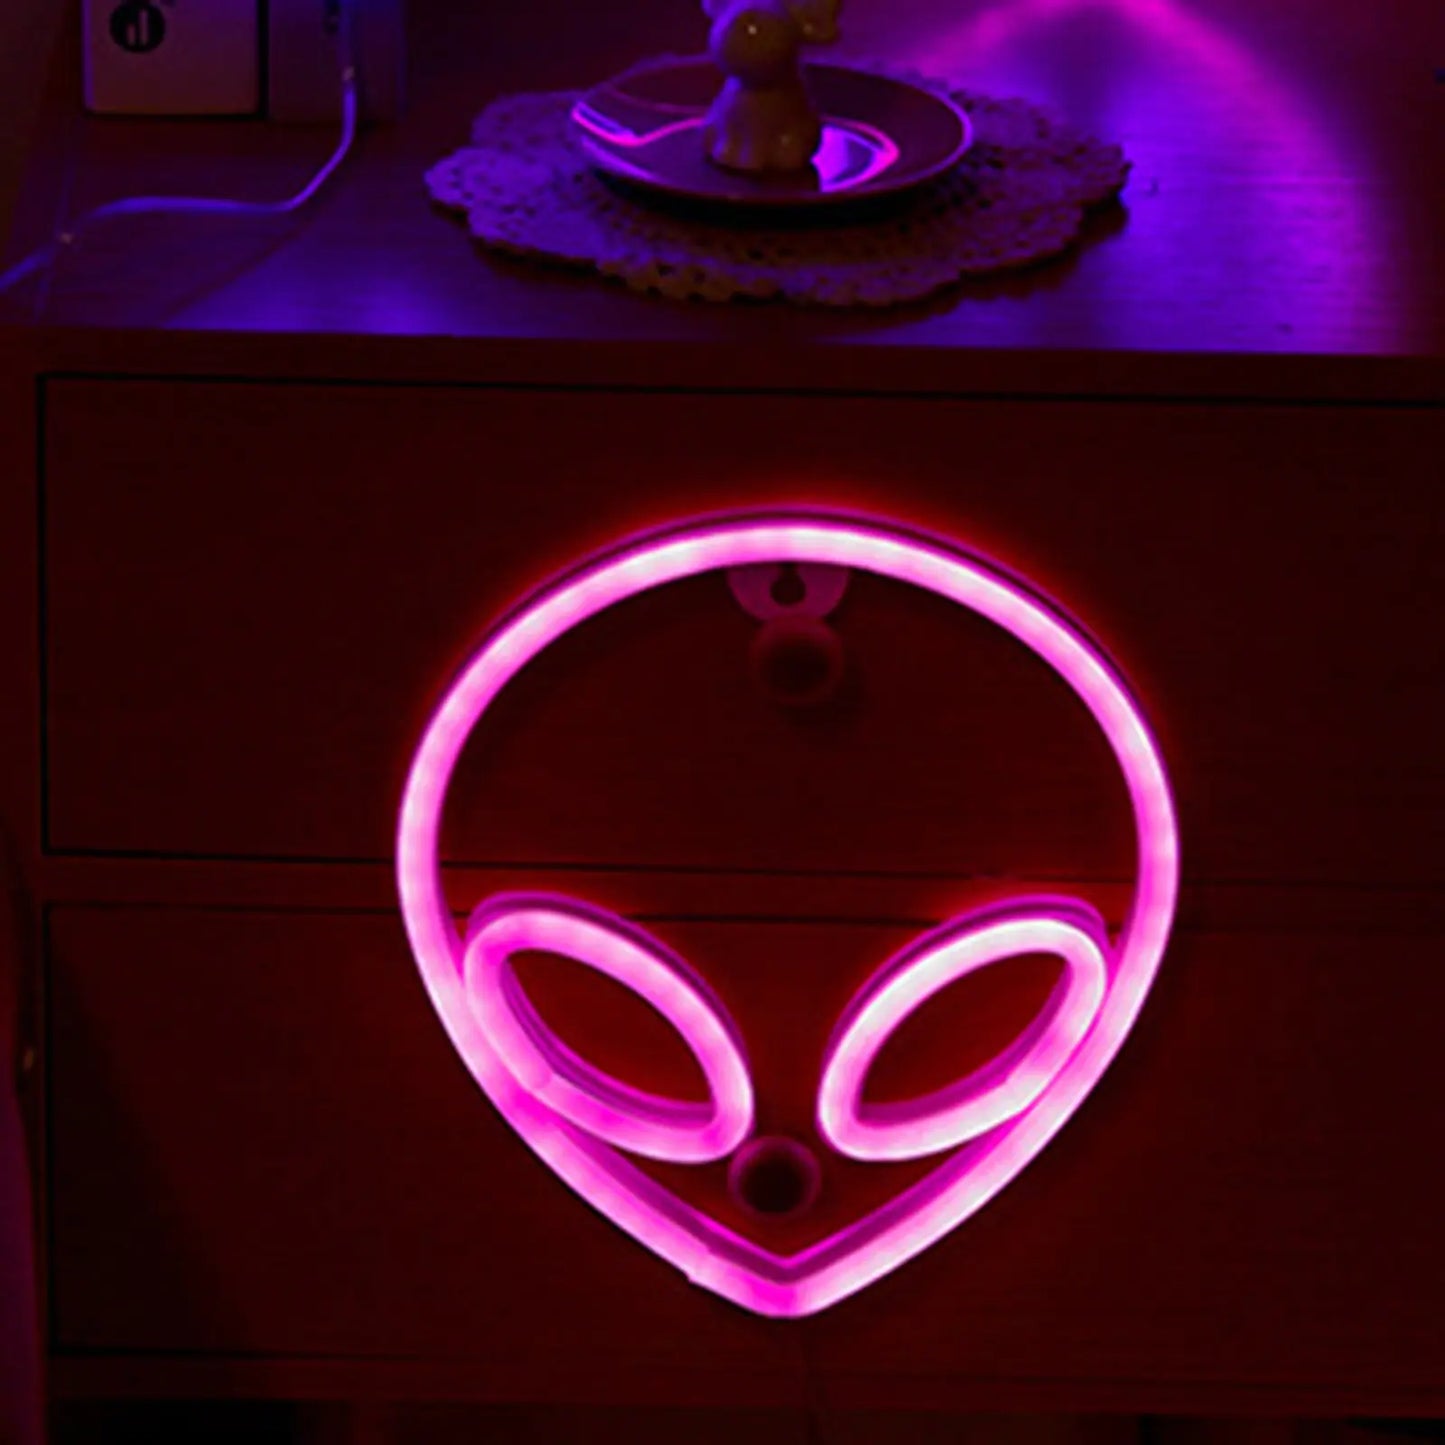 Neon Alien Face LED Light